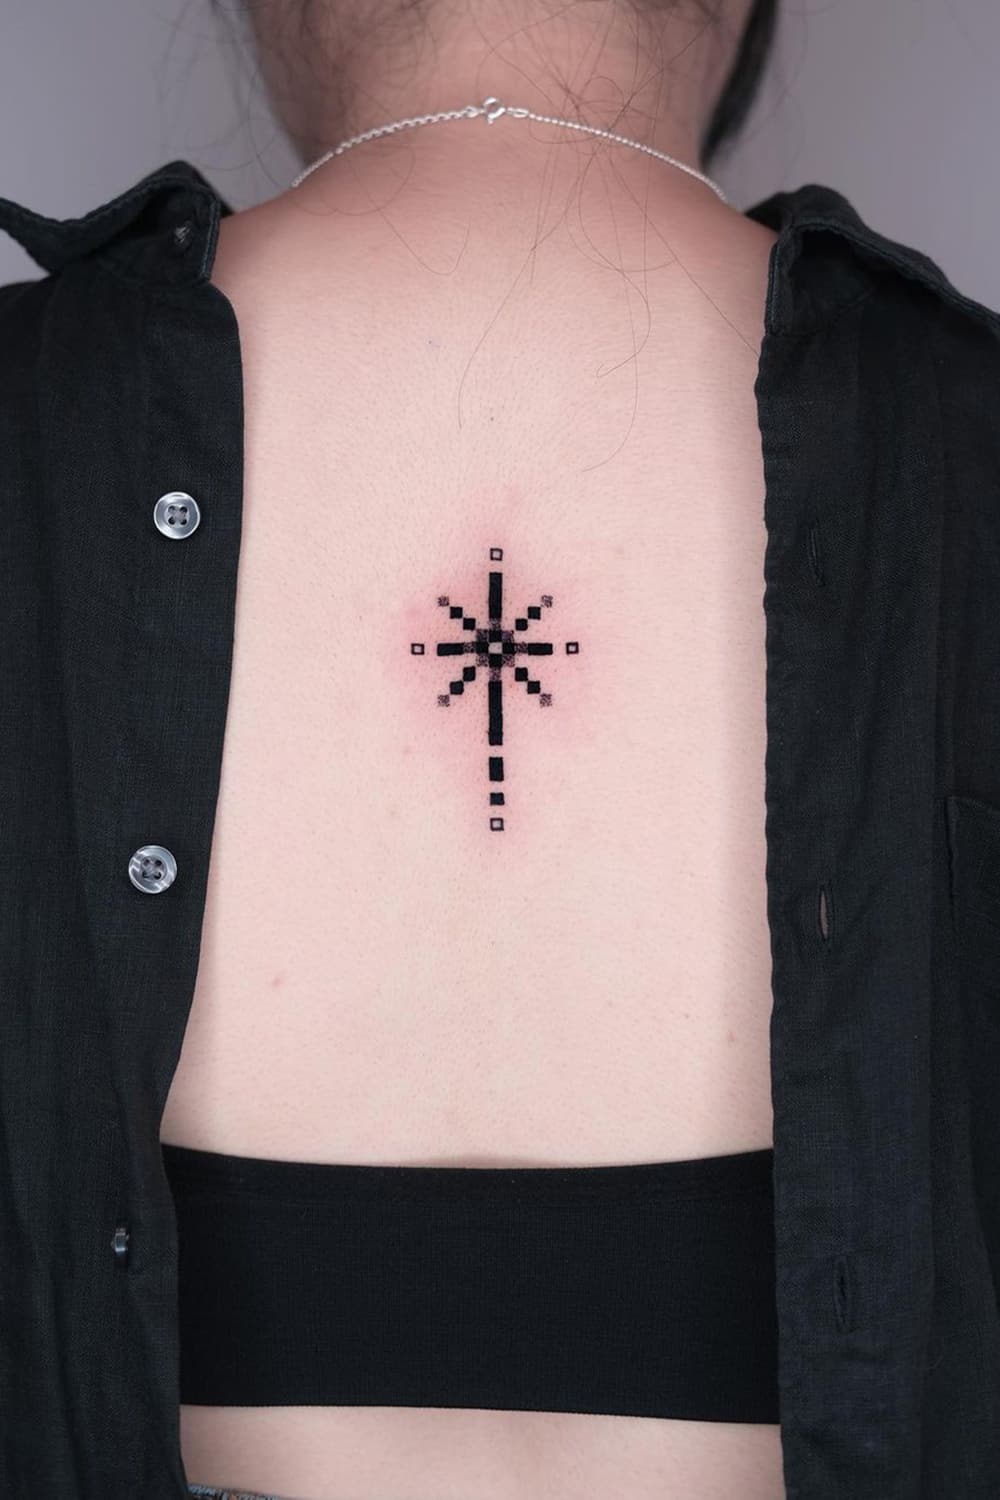 Pixel star tattoo